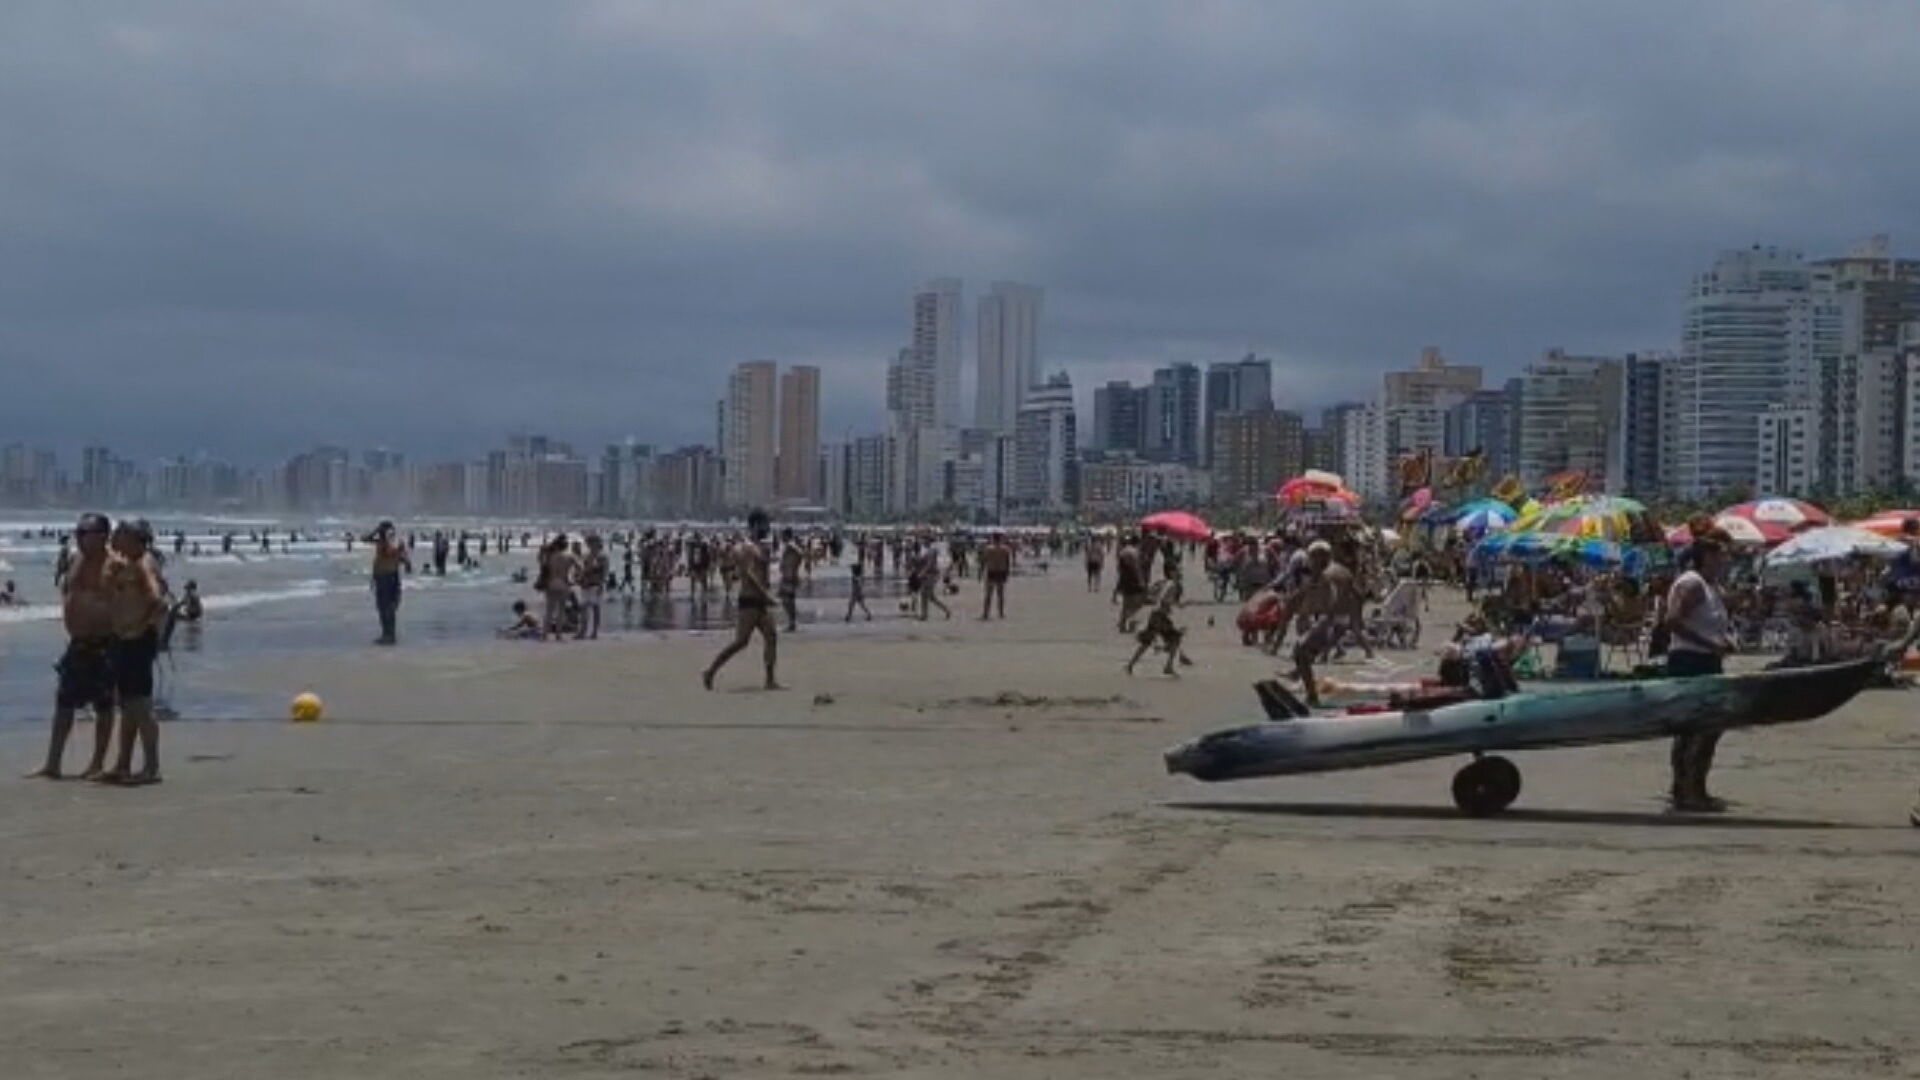 Praias da Baixada Santista sofreram aglomerações devido ao feriado prolongado